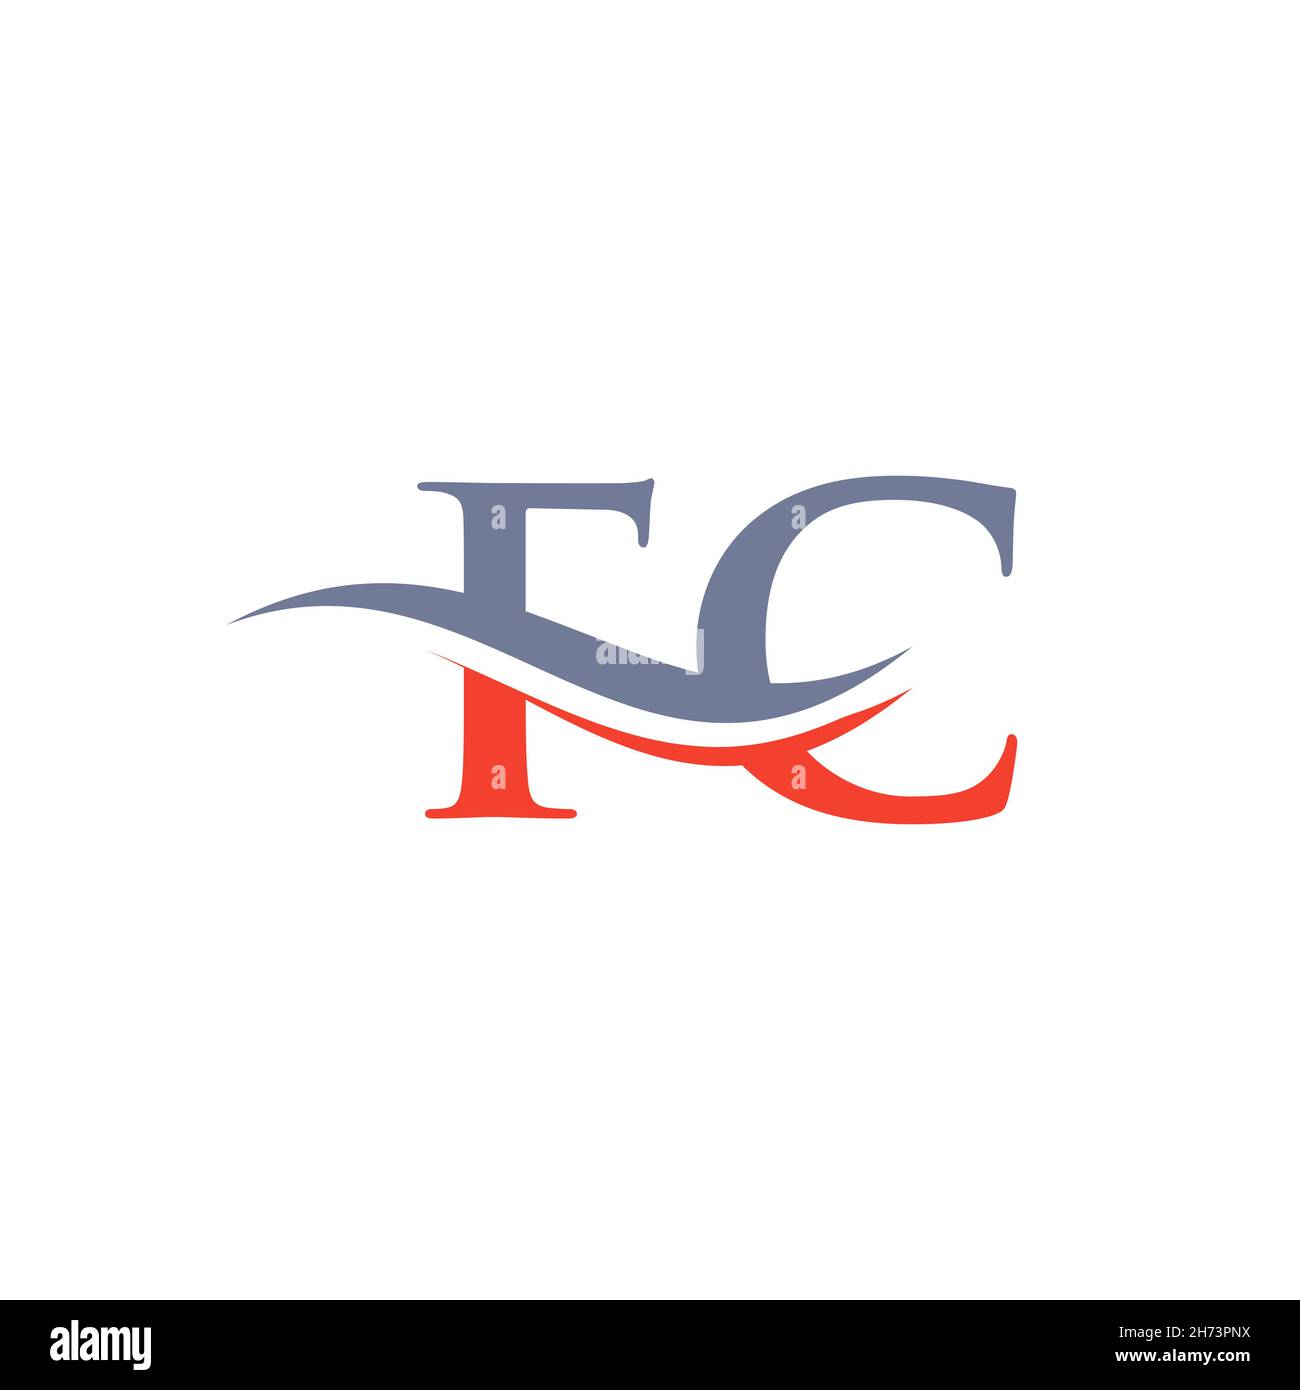 FC-verknüpftes Logo für Geschäfts- und Firmenidentität. Kreativer Buchstabe FC-Logo-Vektor Stock Vektor